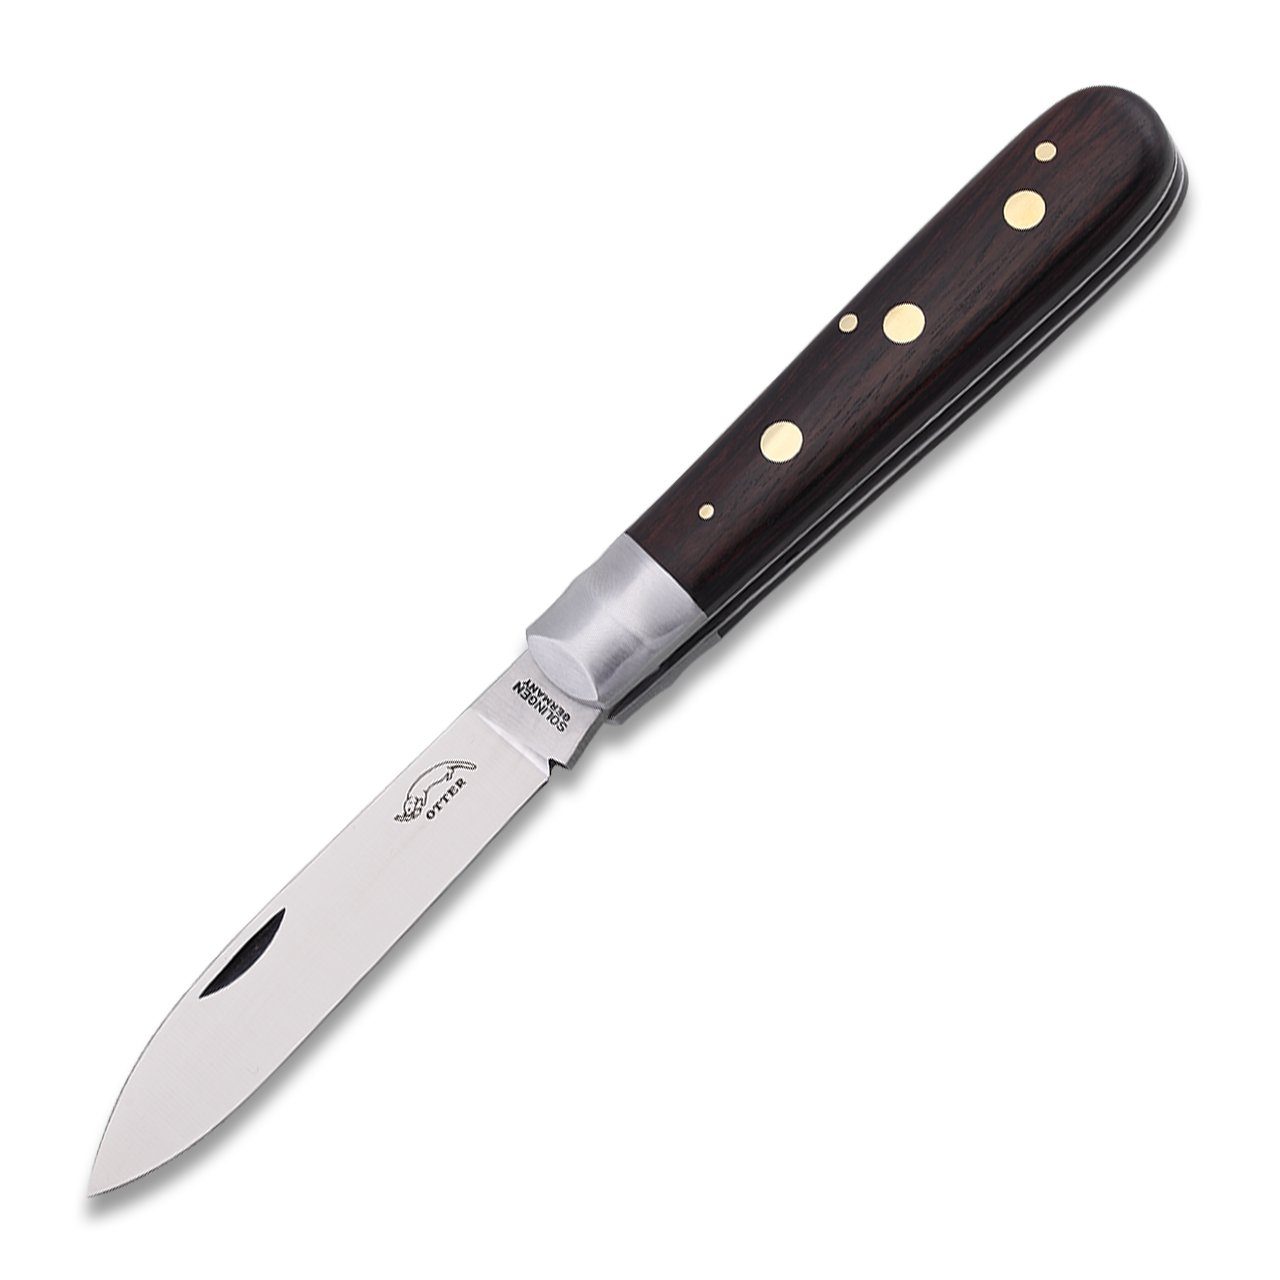 Otter Messer Taschenmesser Drei-Nieten-Messer Grenadill Klinge Carbonstahl, nicht rostfrei, Messingnieten, Slipjoint | Taschenmesser